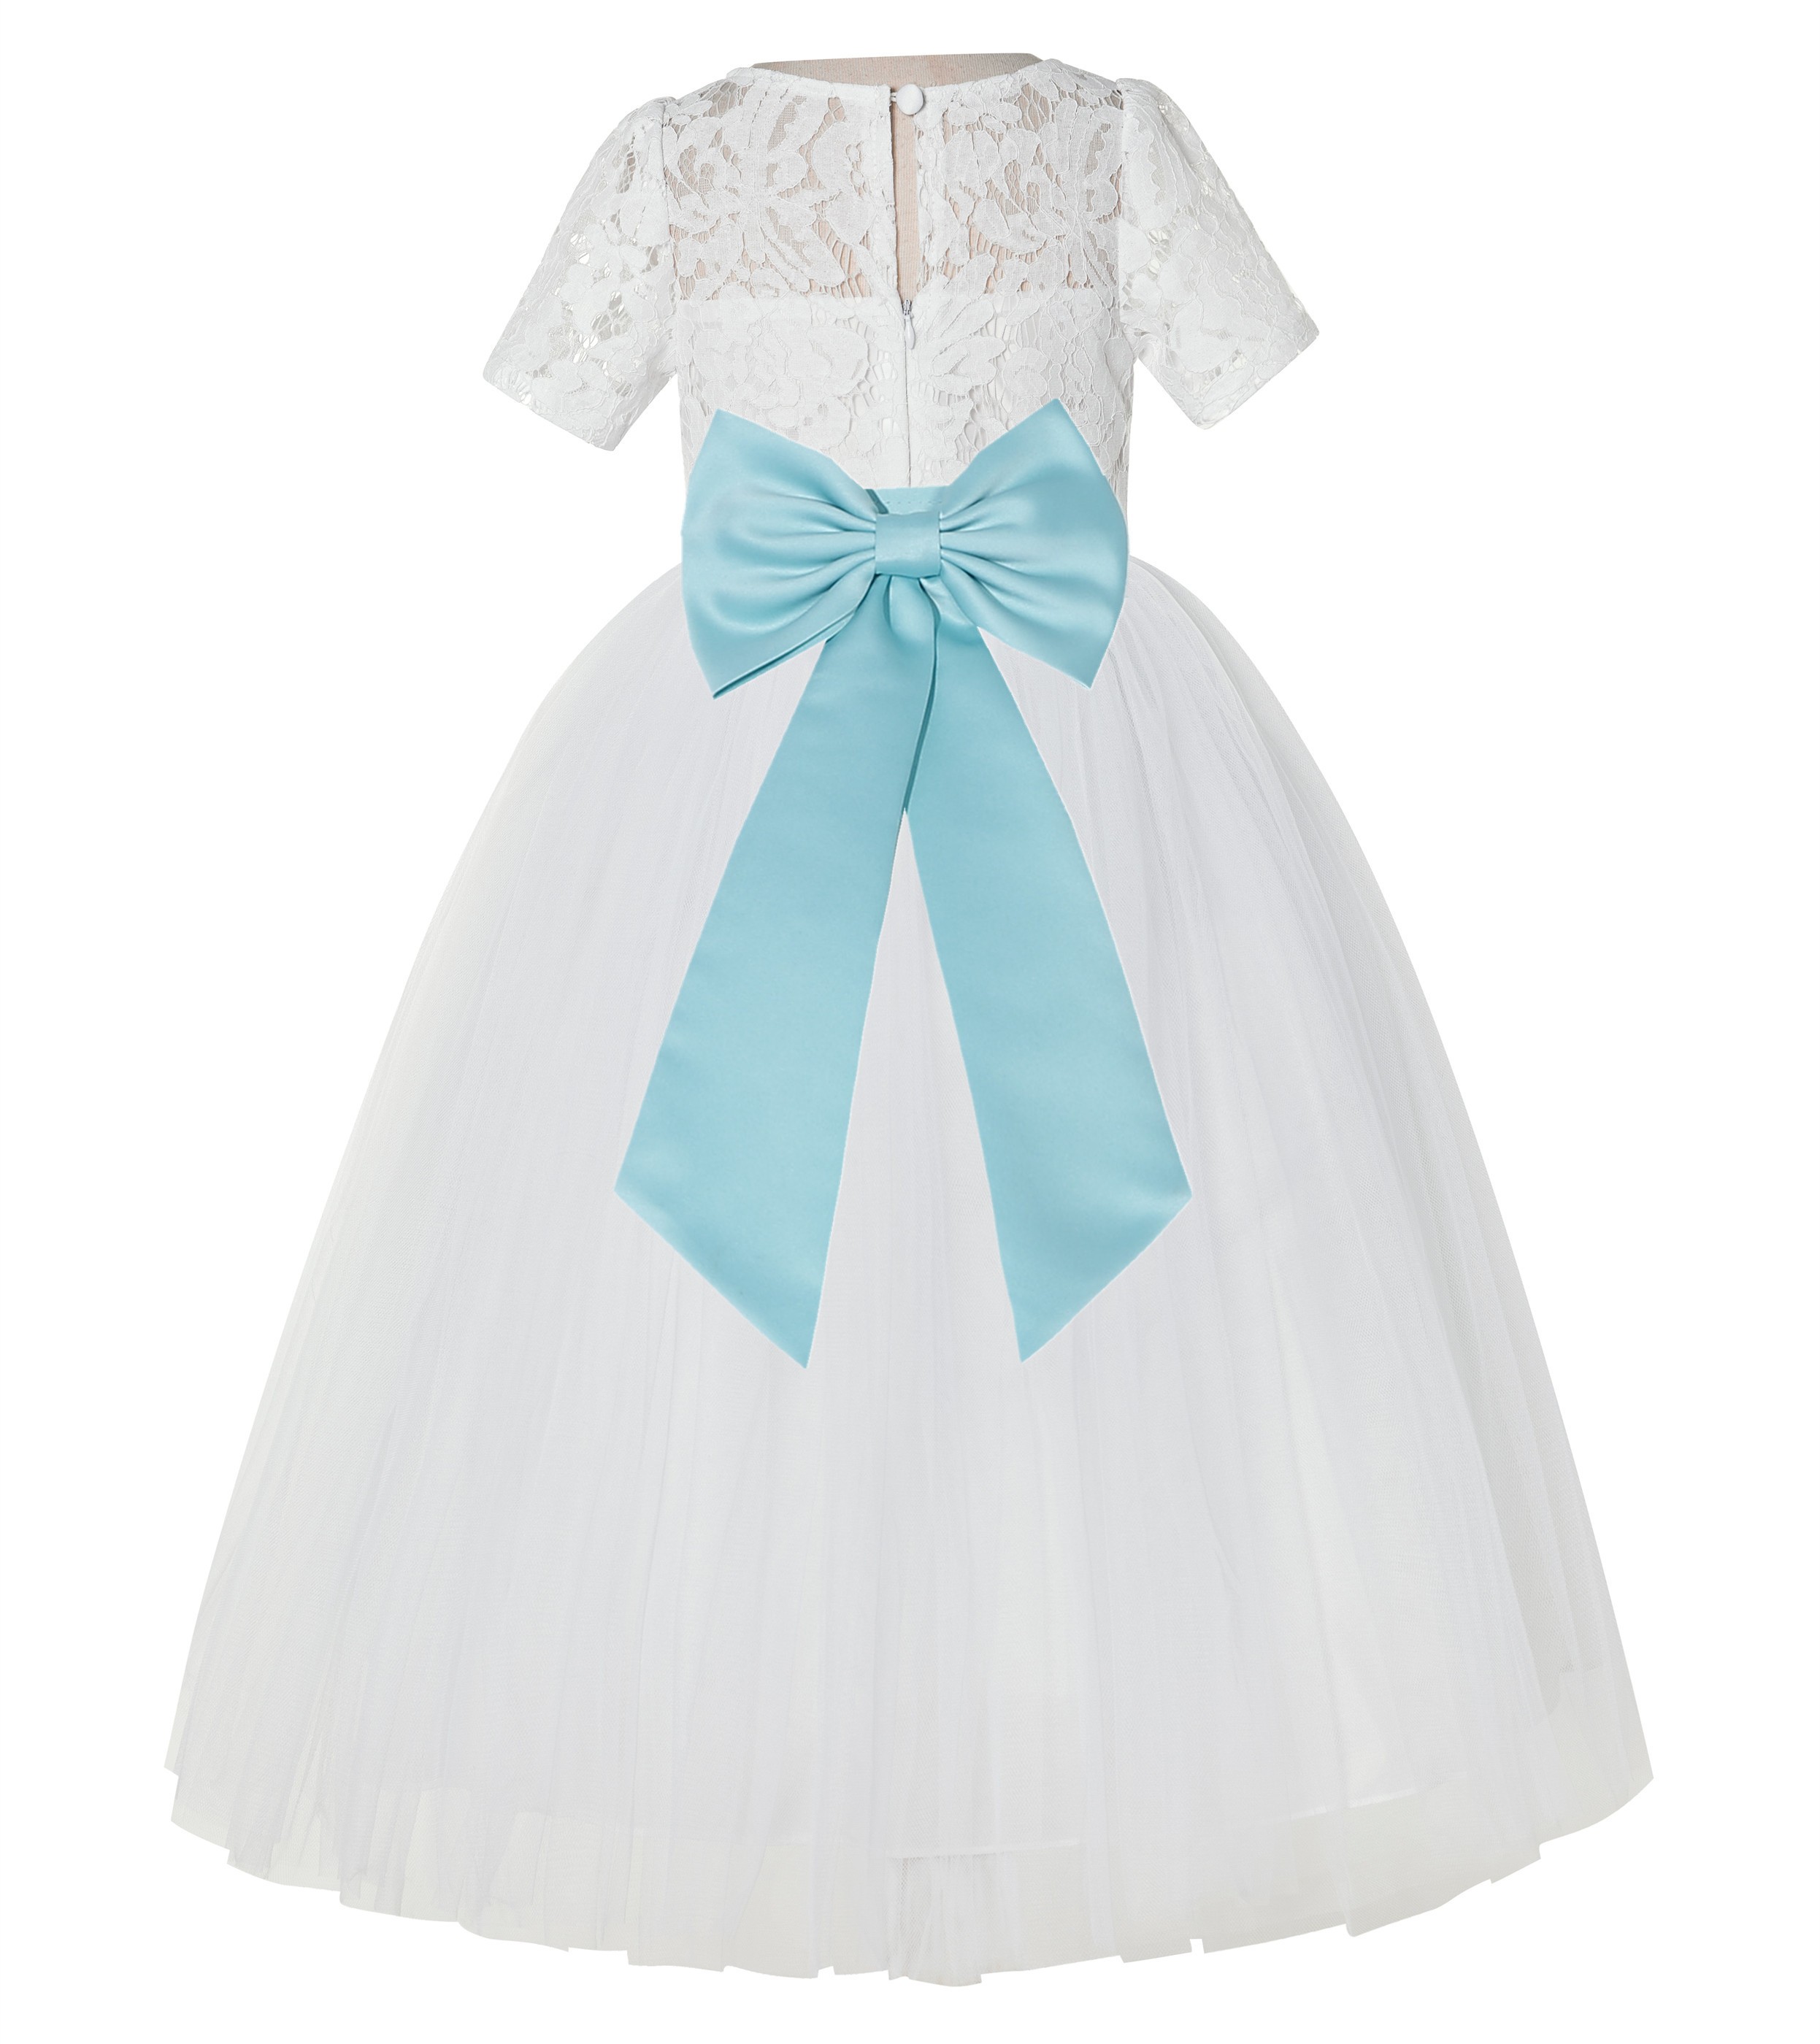 Ivory / Spa Blue Floral Lace Flower Girl Dress Vintage Dress LG2